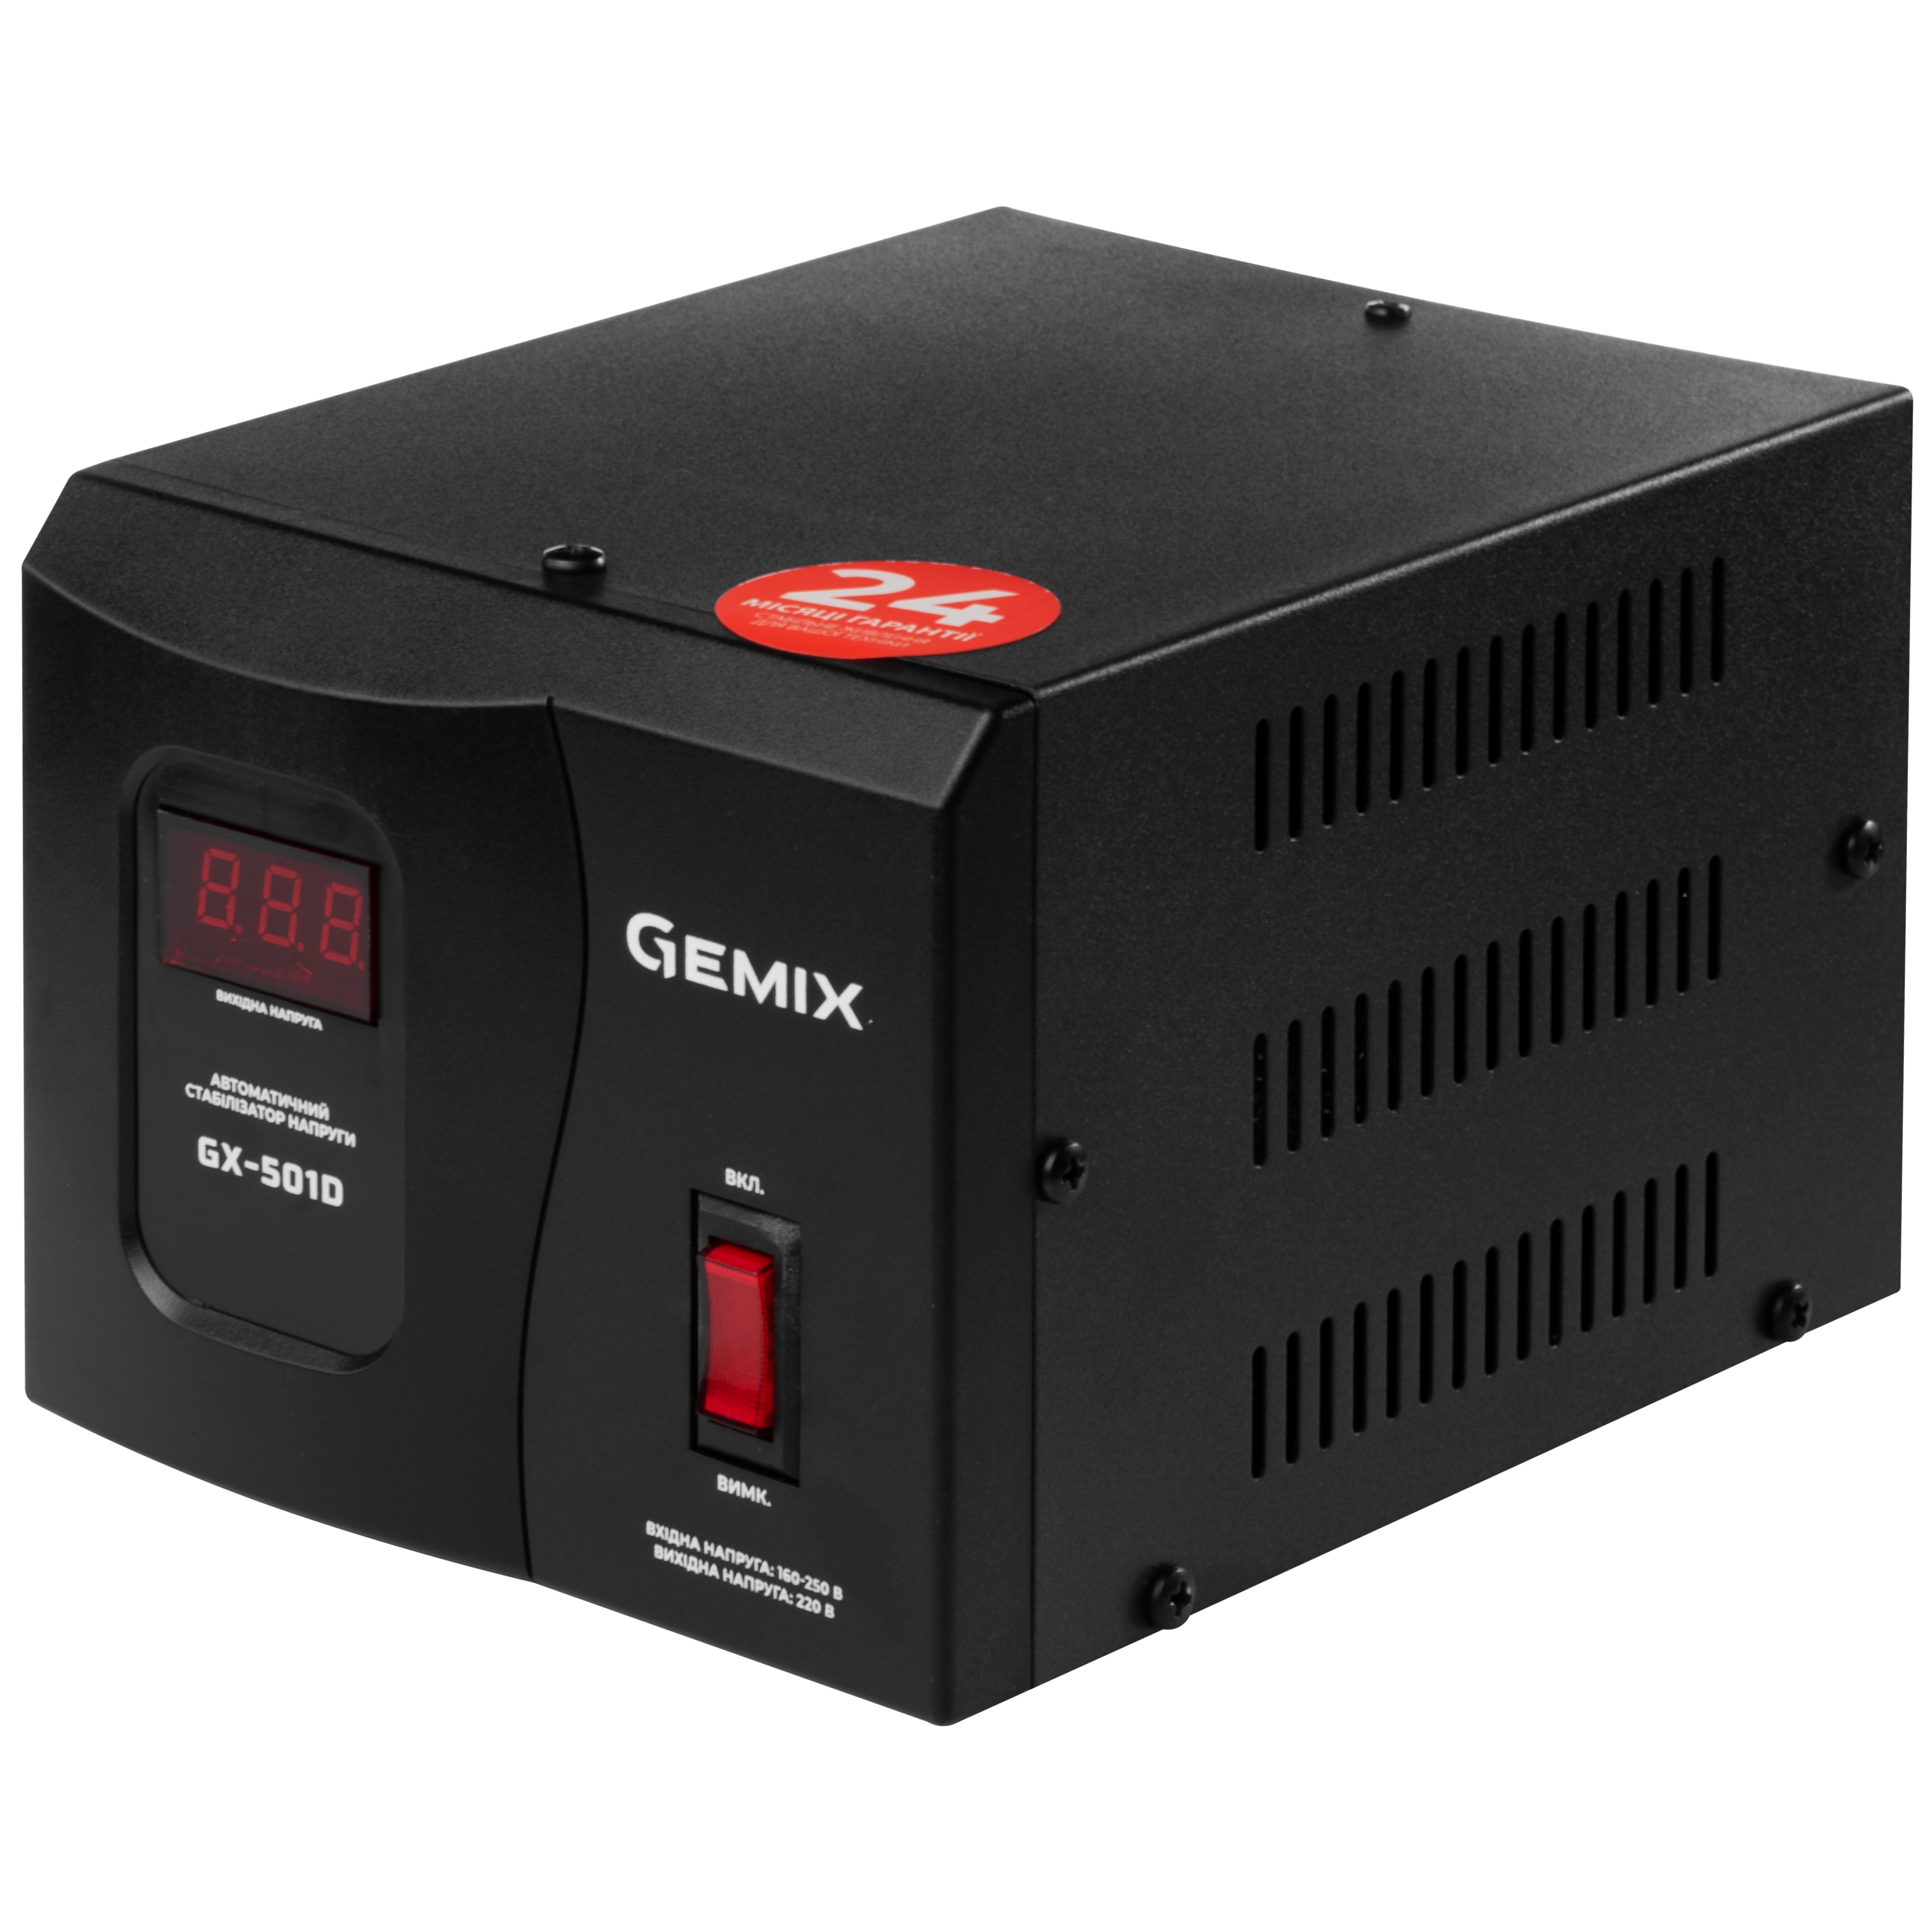 Купить стабилизатор напряжения Gemix GX-501D в Киеве